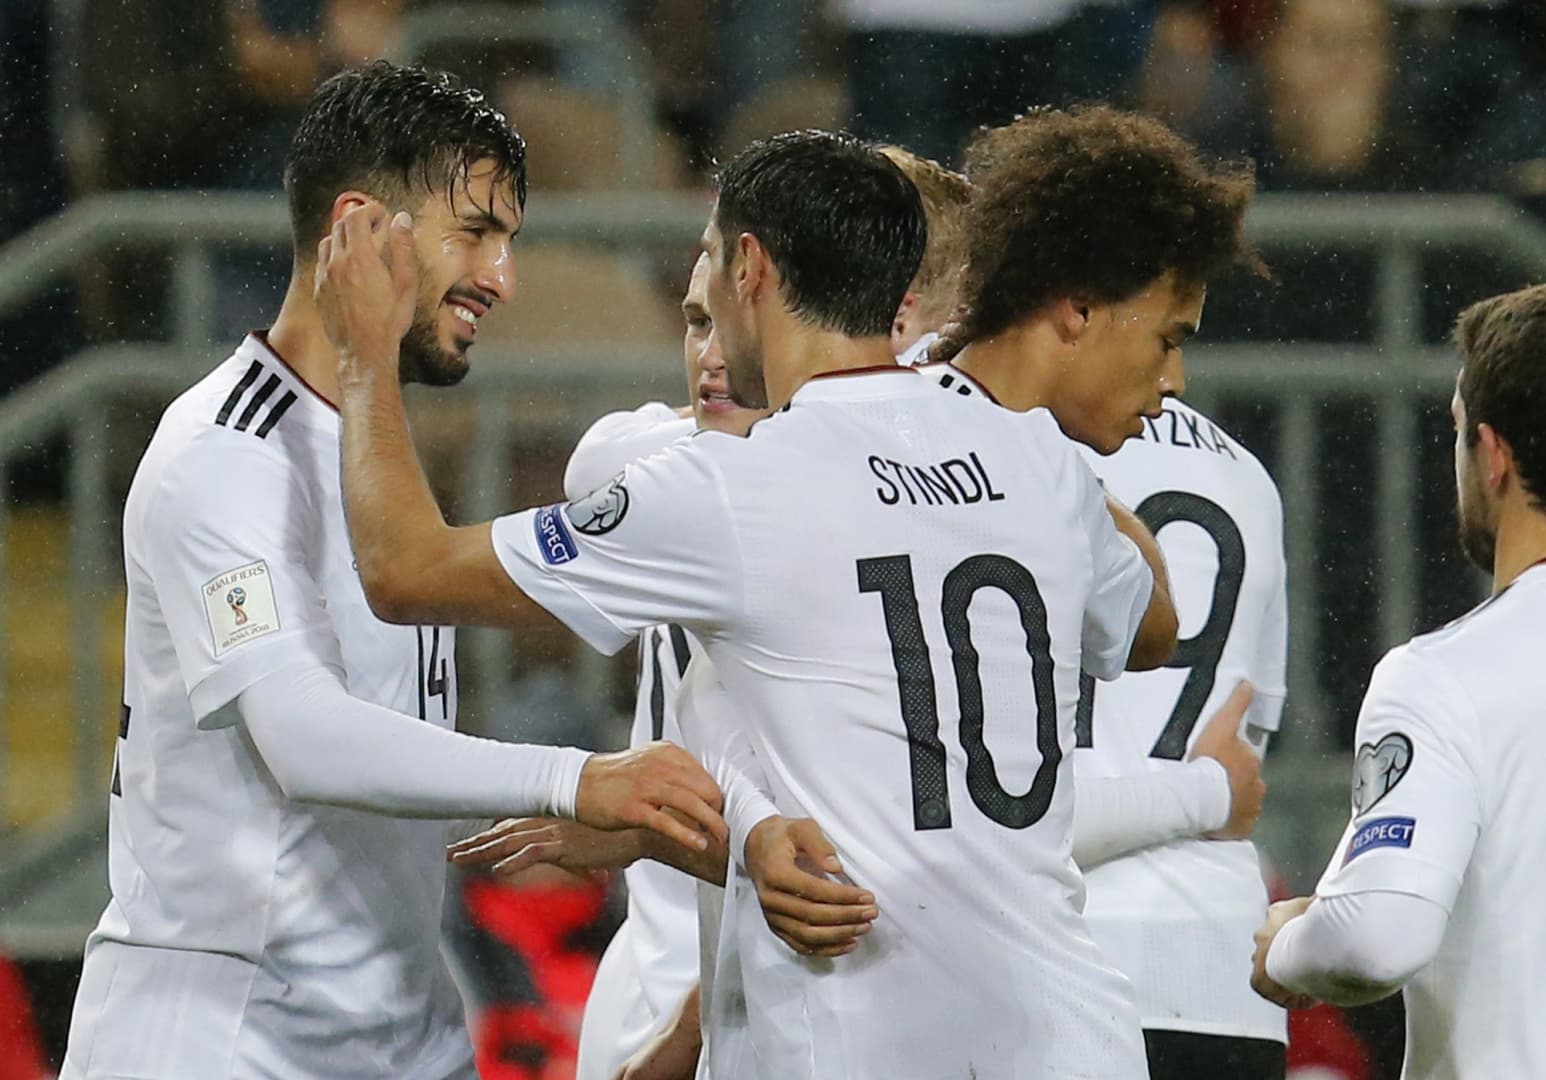 Vb-selejtezők: Öt gólt pakoltak a németek, pontveszteség nélkül zárták a csoportot